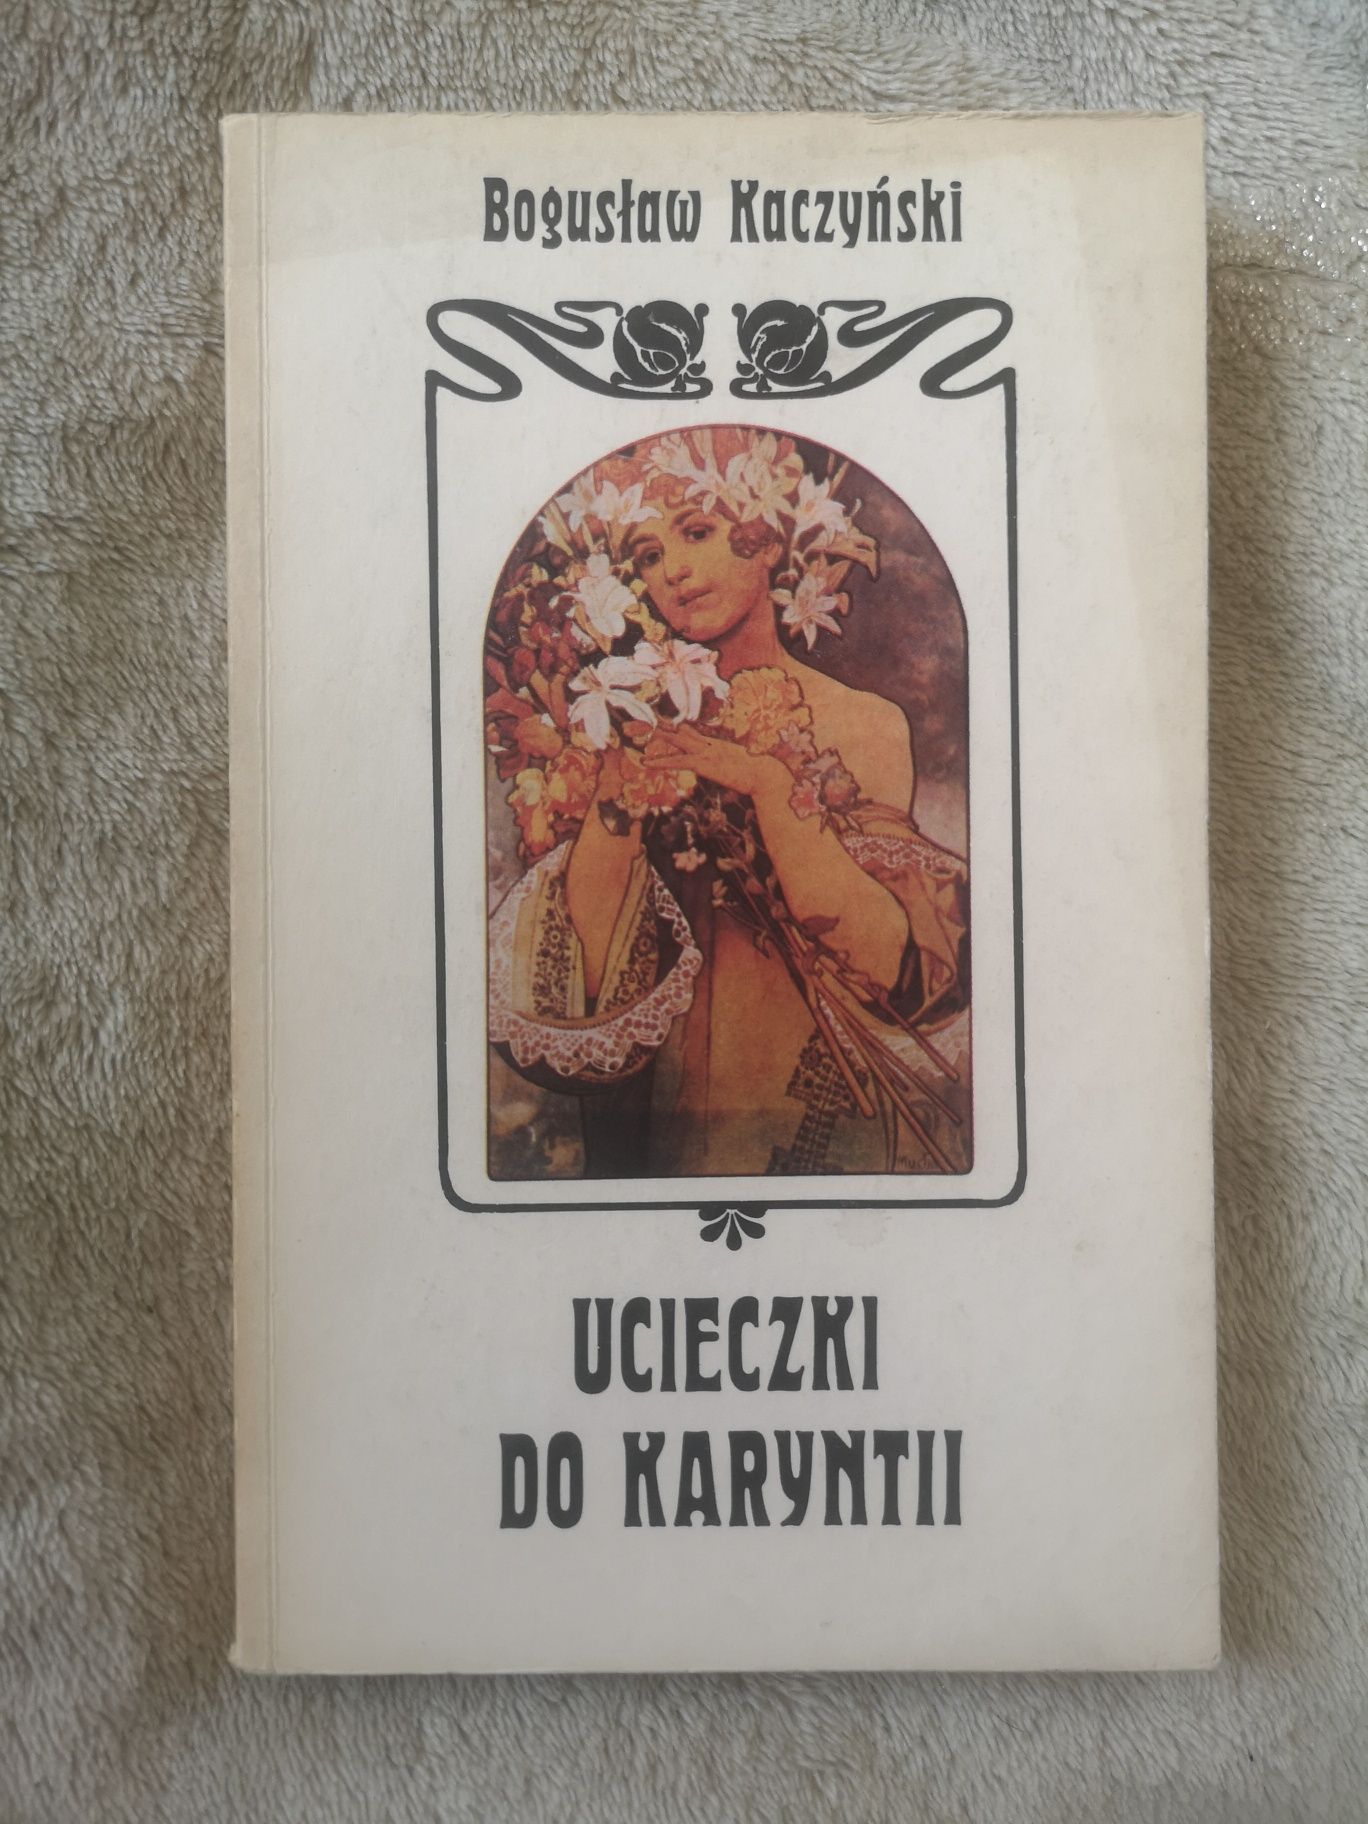 Z AUTOGRAFEM Ucieczki do Karyntii, Bogusław Kaczyński